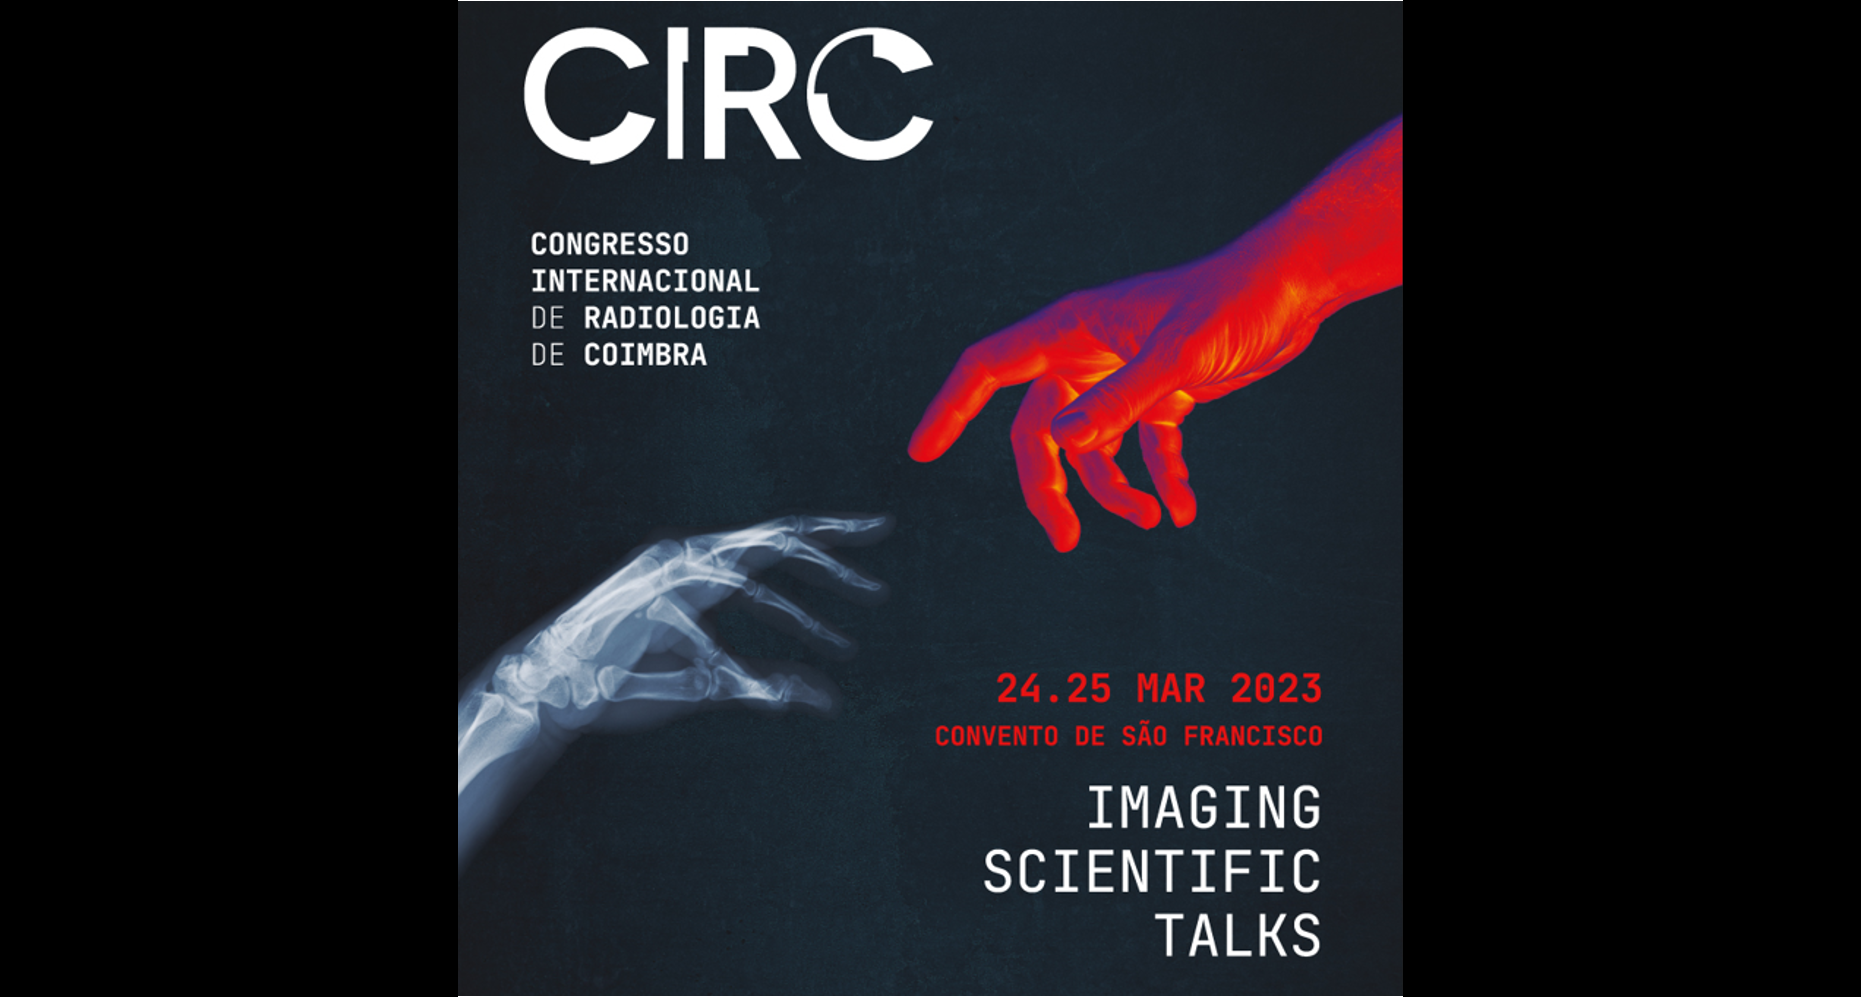 Congresso Internacional de Radiologia de Coimbra